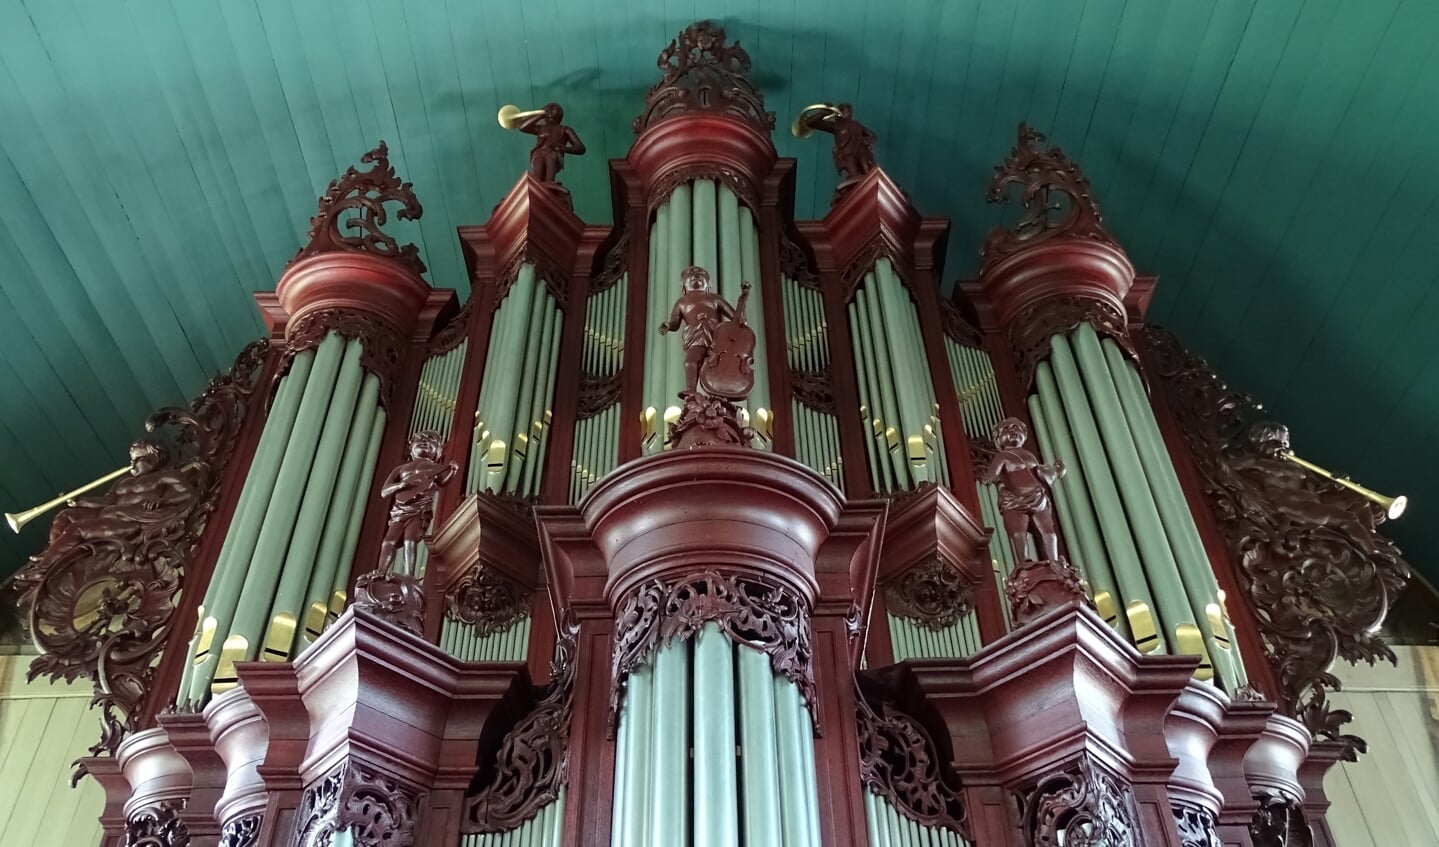 Het front van het Hinsz-orgel in Midwolda dat 250 jaar bestaat.